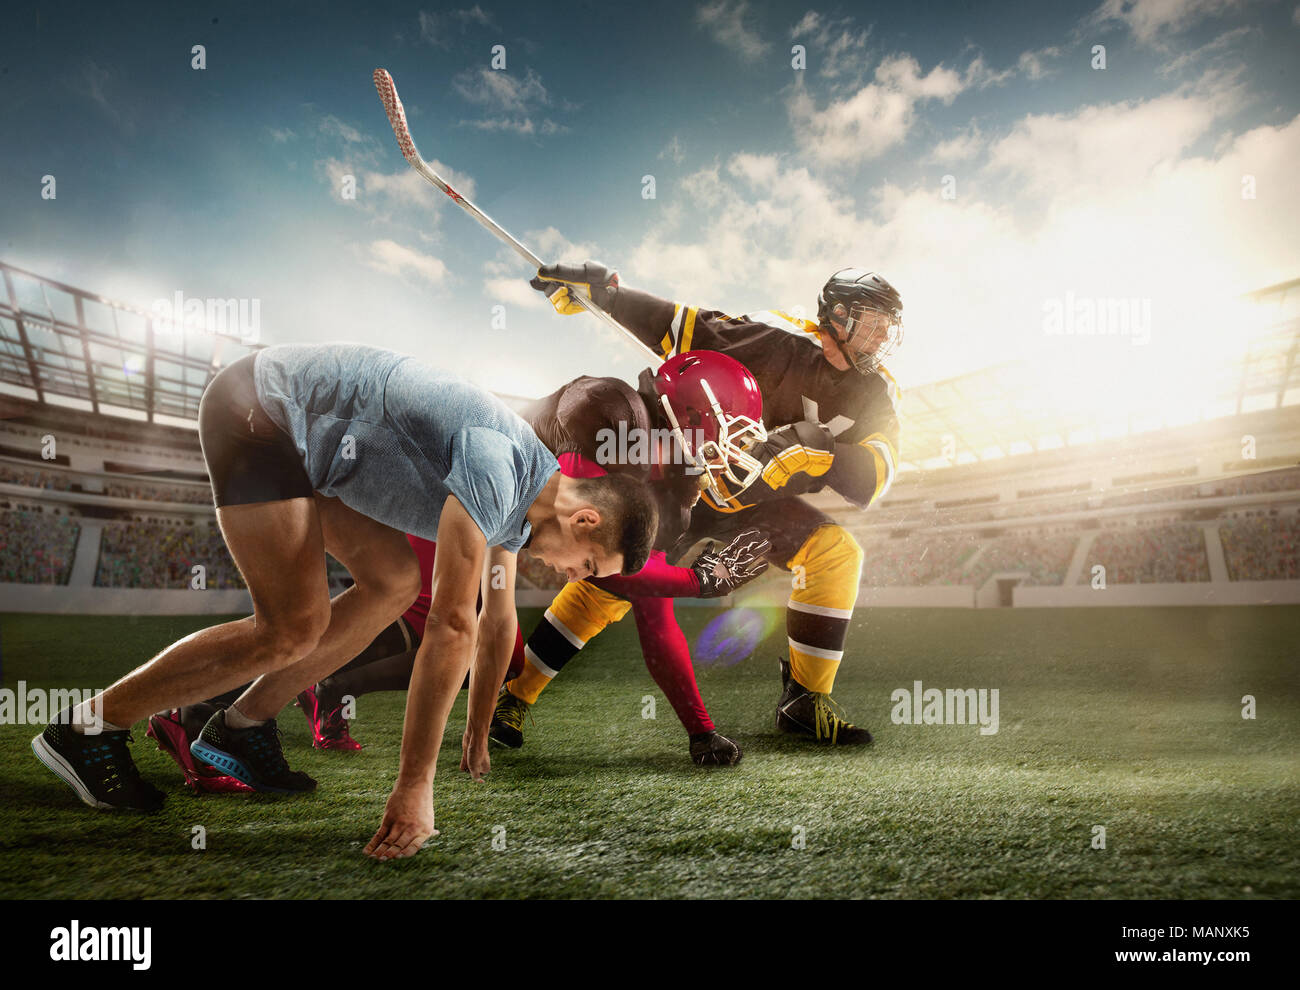 Multi Sport Collage über Eishockey, laufen, American Football Spieler bei Stadion Stockfoto